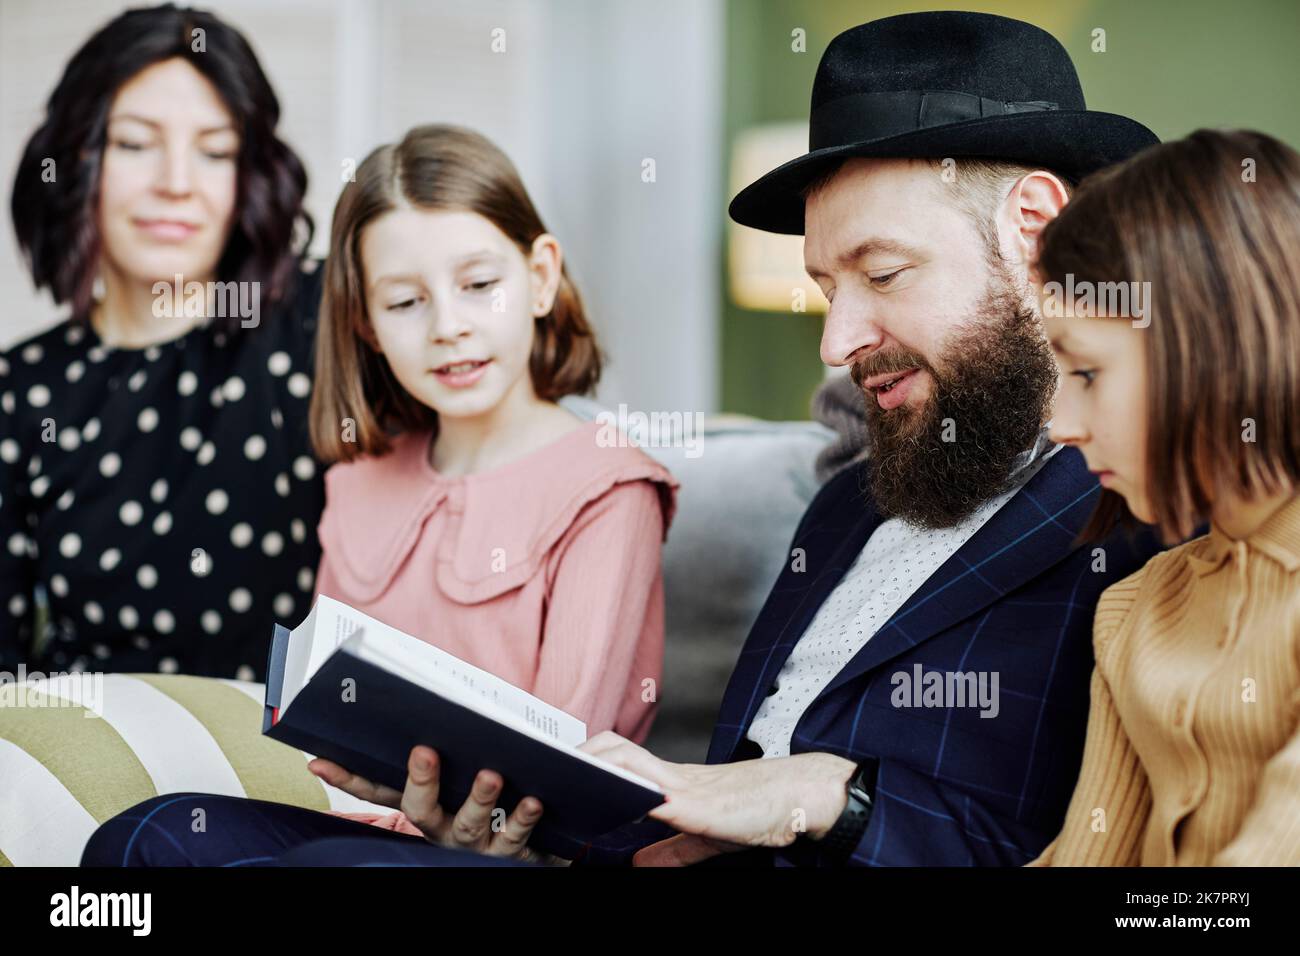 Seitenansicht Porträt eines orthodoxen jüdischen Mannes, der im häuslichen Umfeld ein Buch für Kinder liest Stockfoto